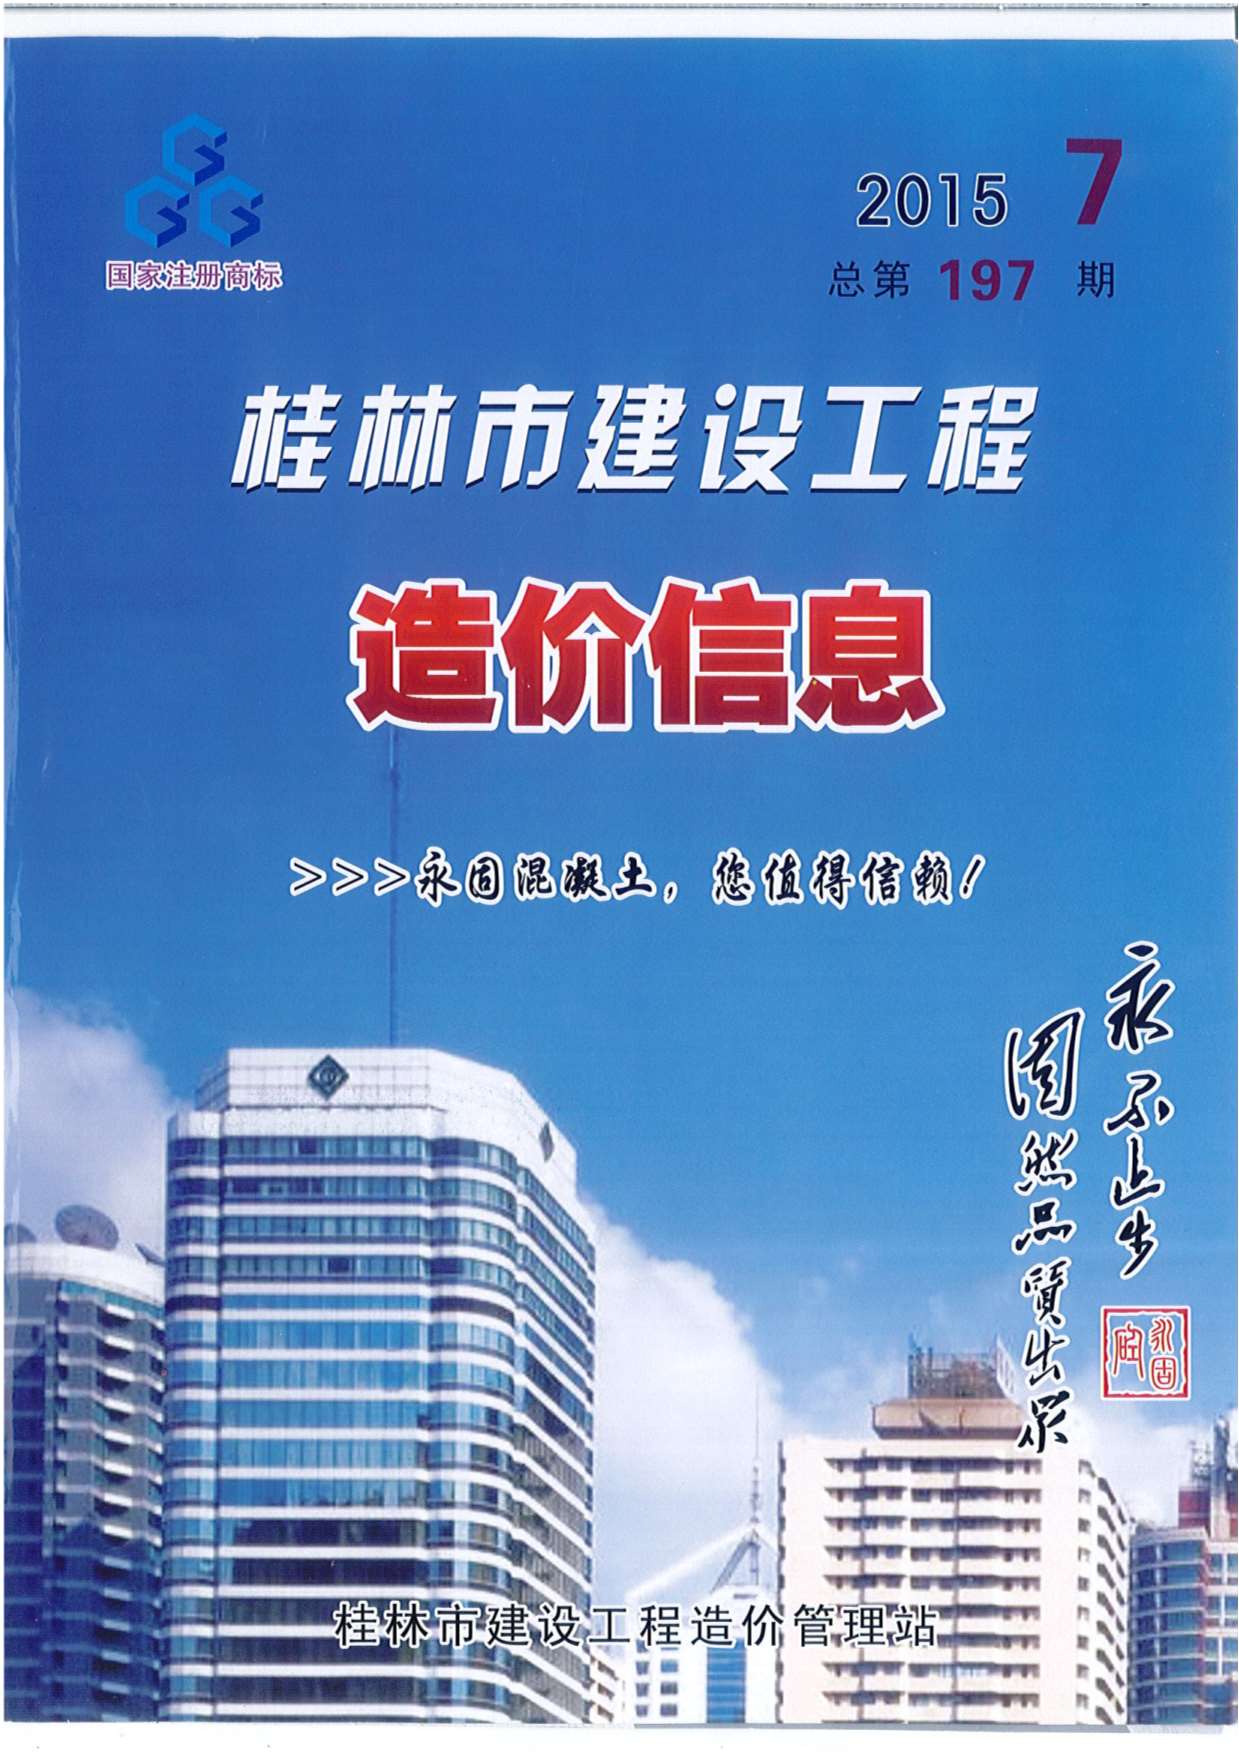 桂林市2015年7月材料价